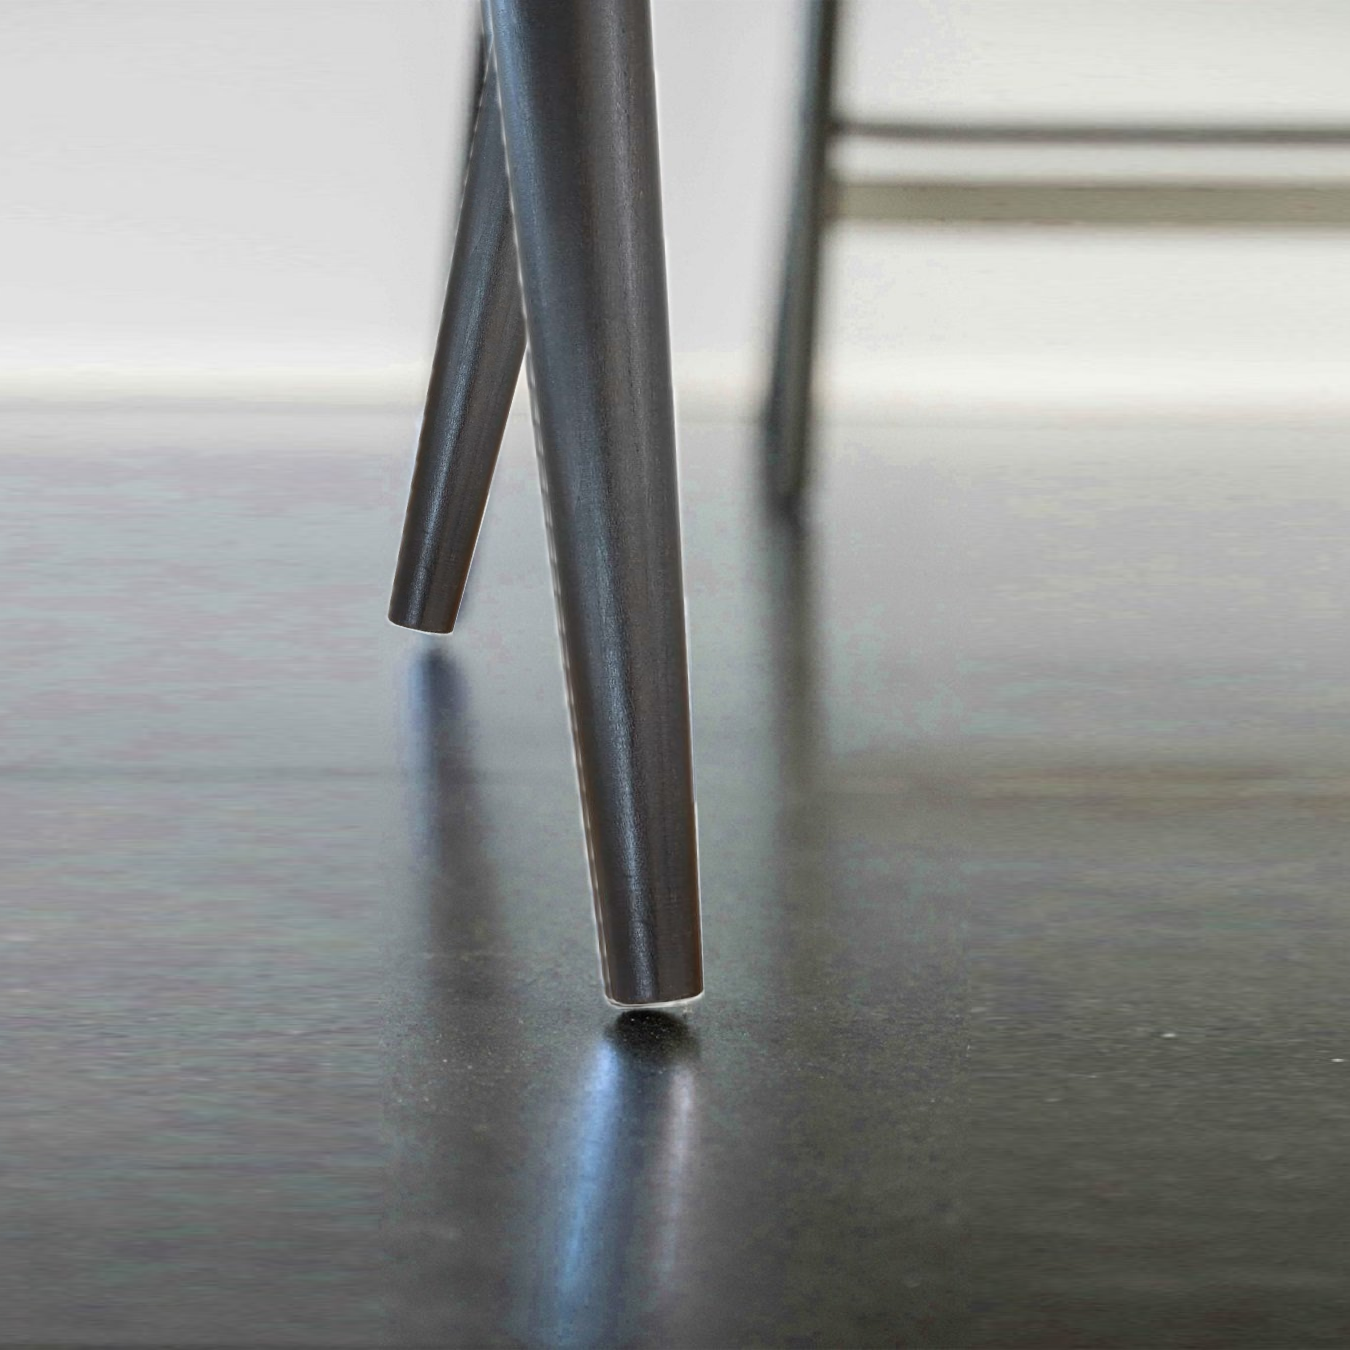 Dunkelgrüner Stuhl aus Material oder Leder ✔ EVA-Modell